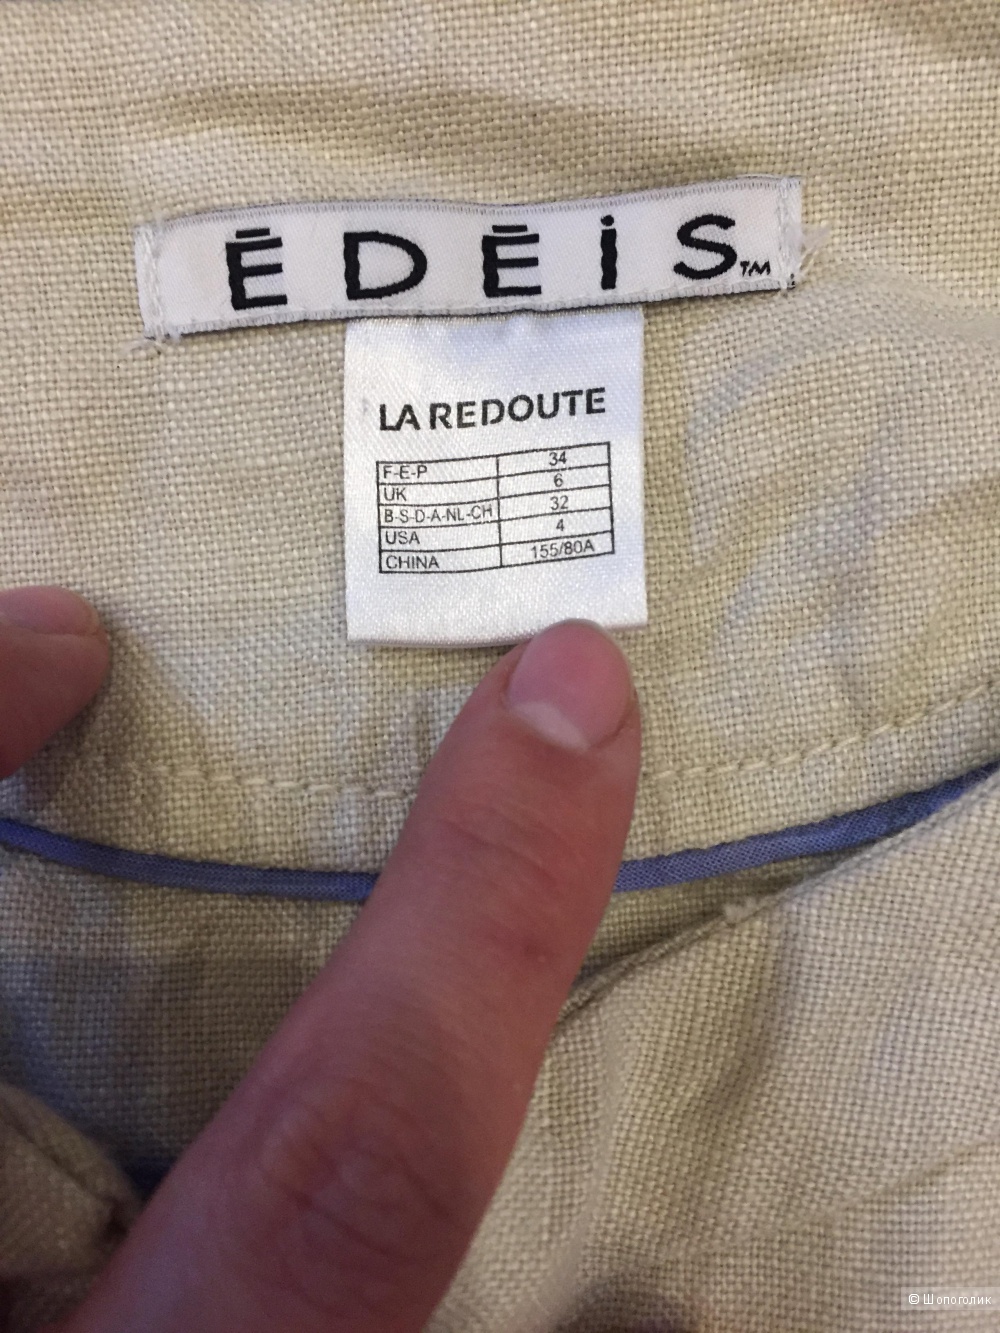 Блейзер La redoute Edeis из 100% льна новый 34 размера